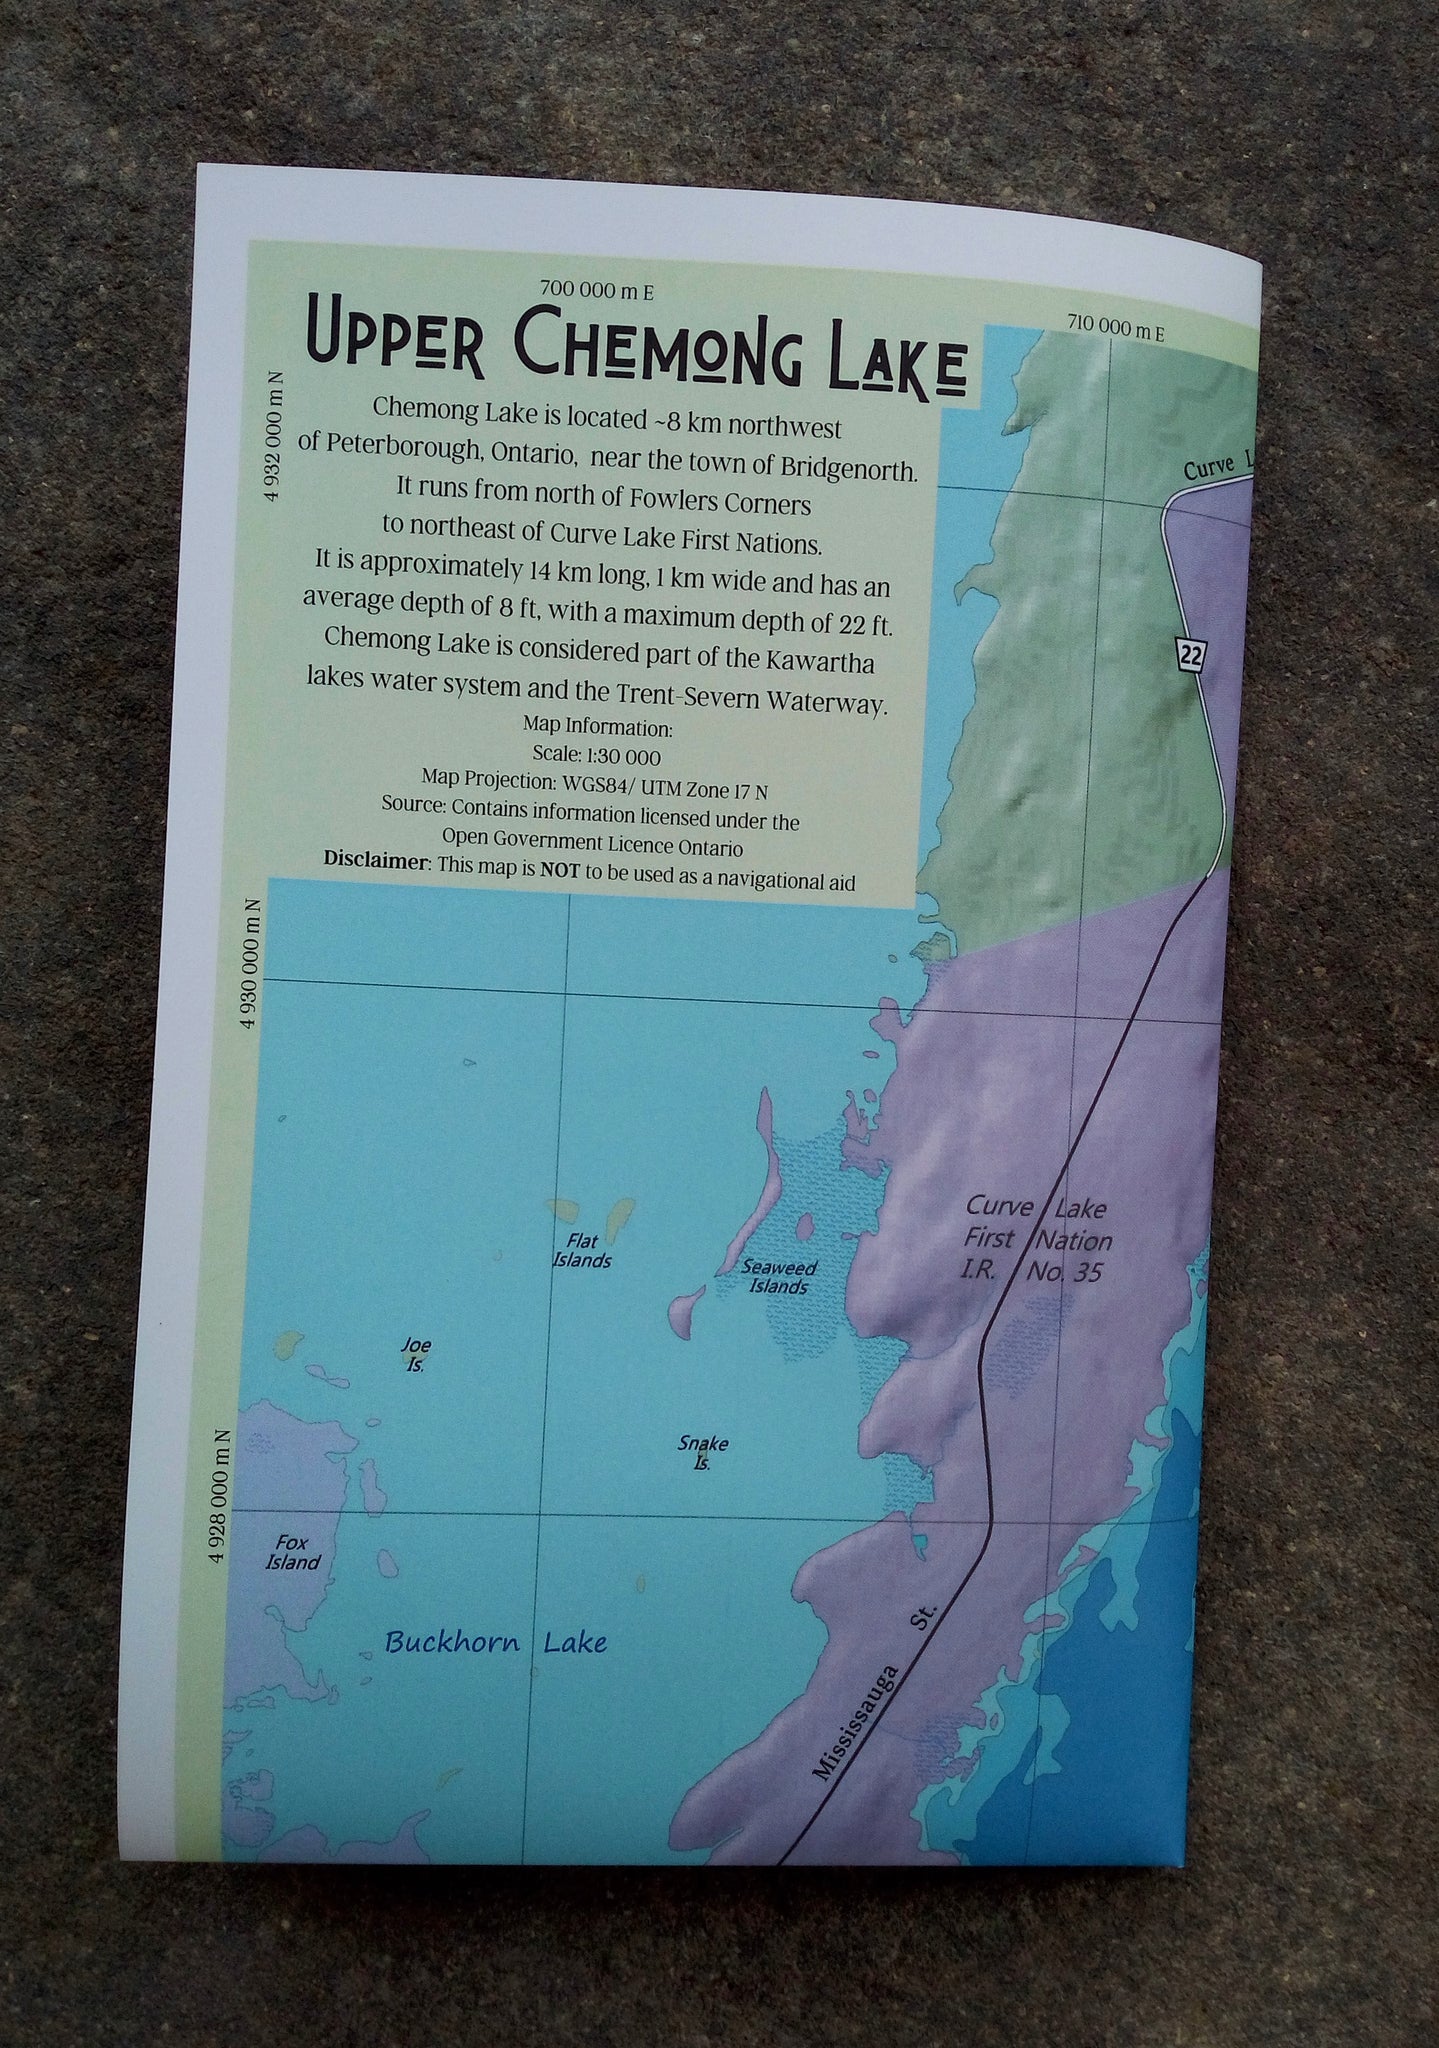 Chemong Lake